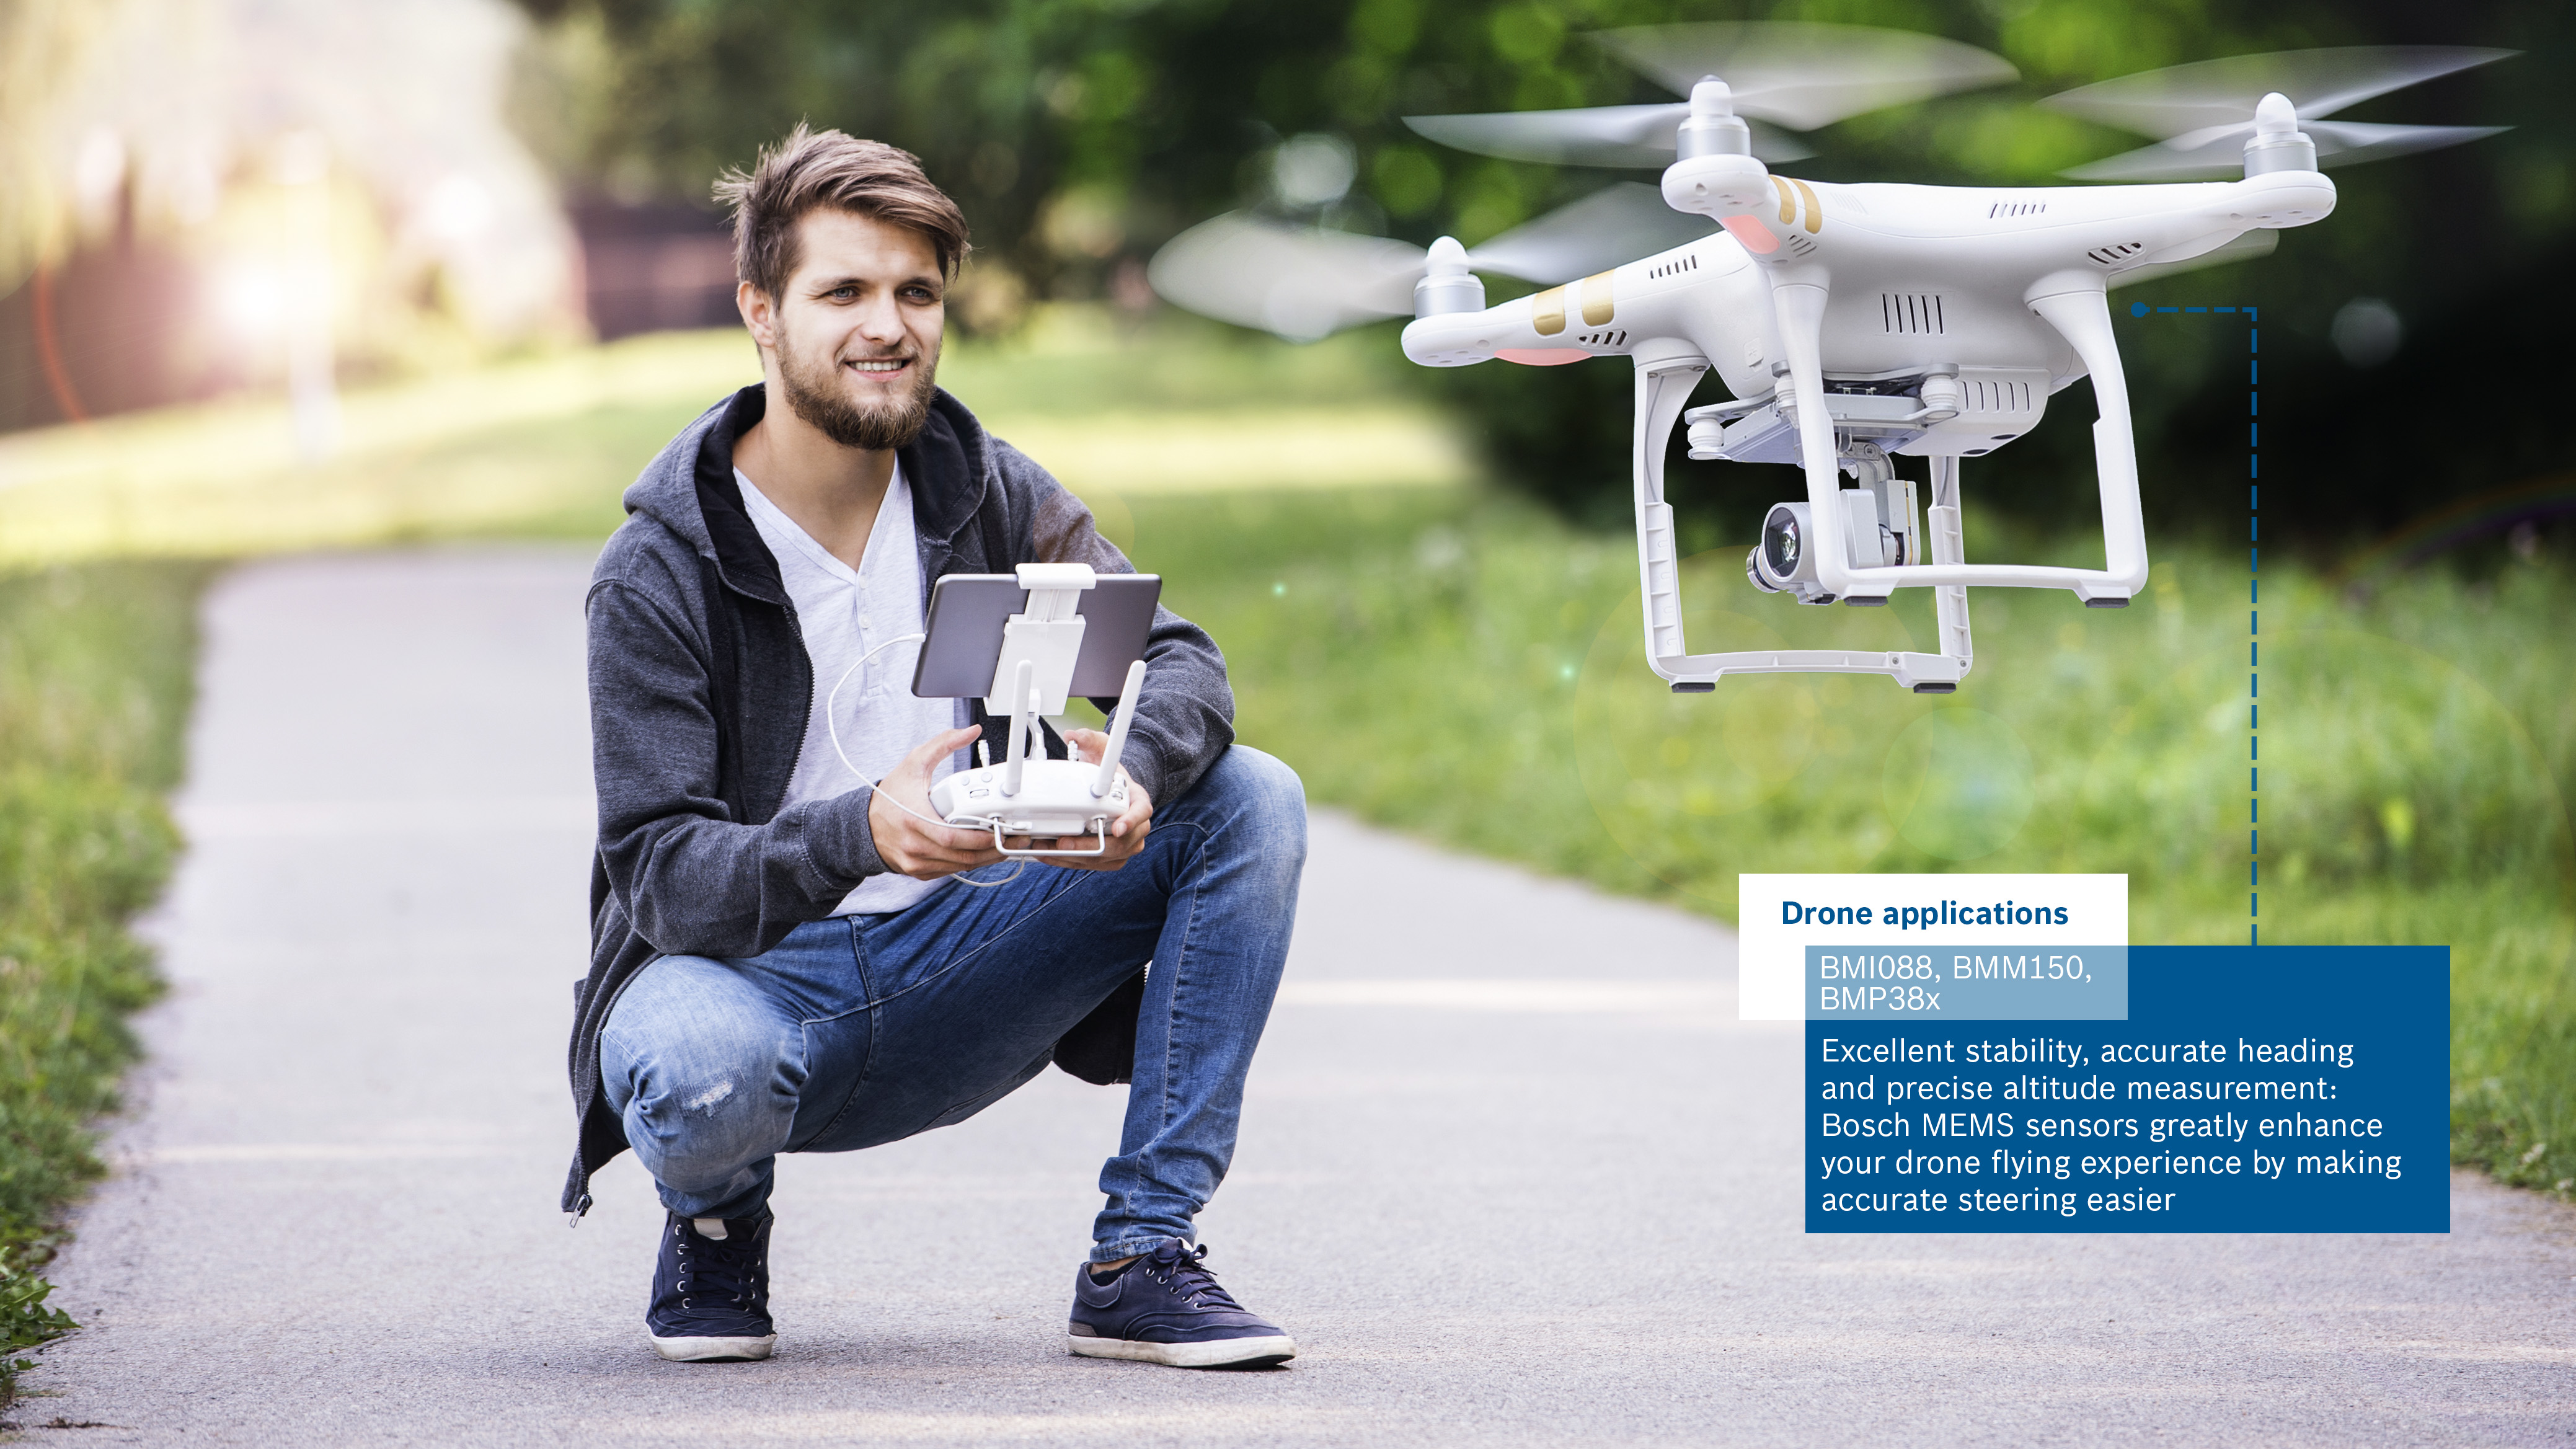 MEMS senzor BMI088 výrazně vylepšuje letové schopnosti dronů